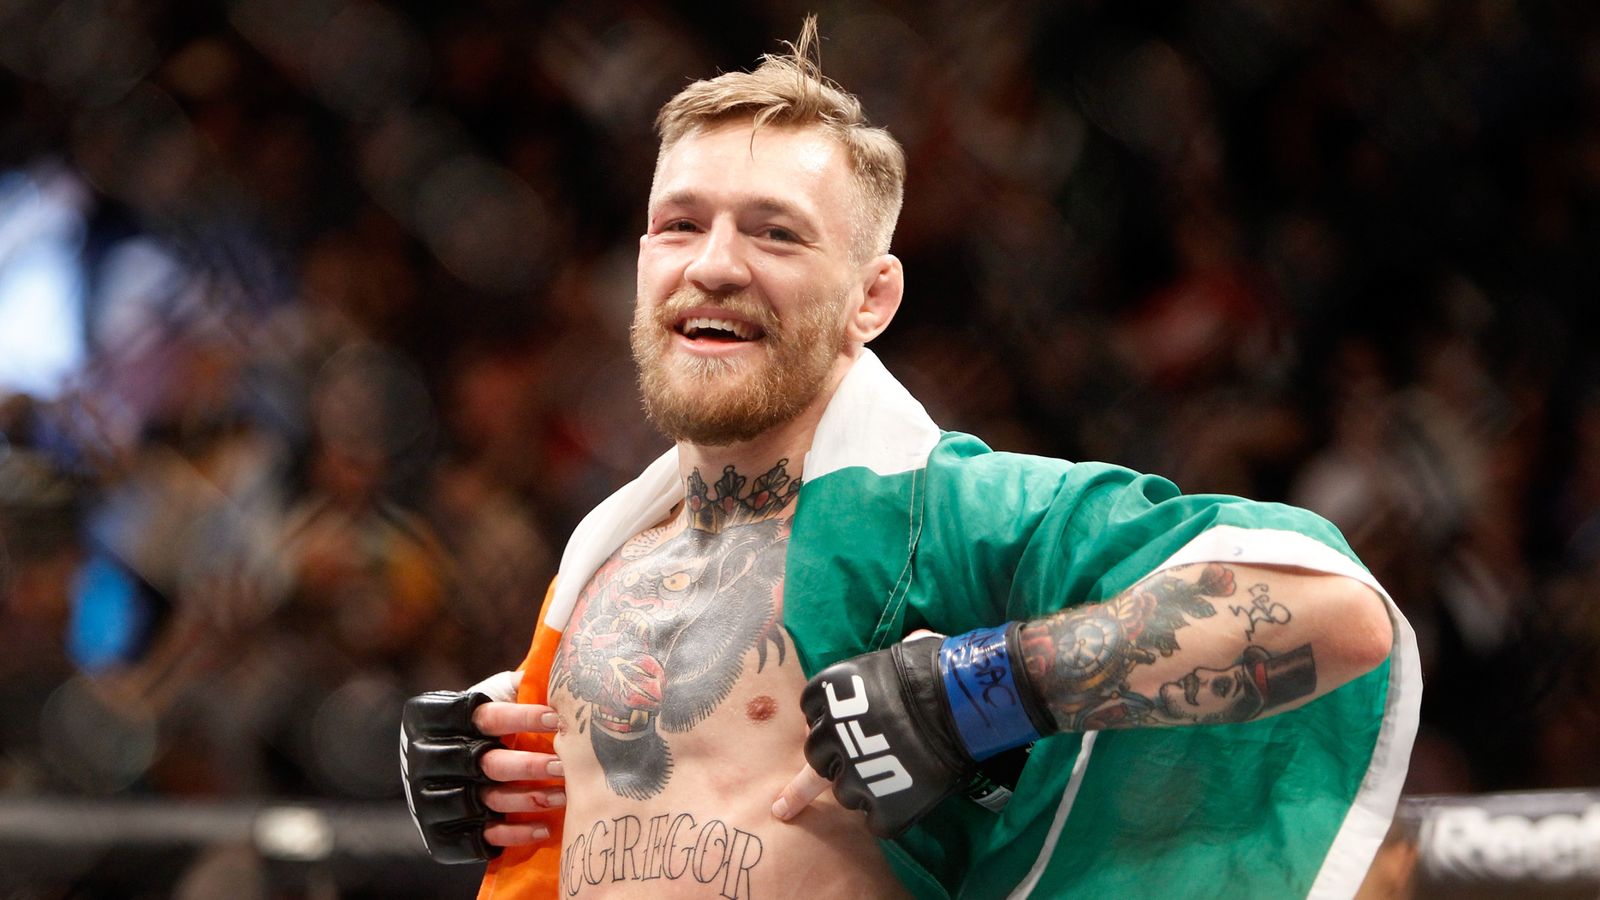 Conor McGregor has vowed to build the UFC into a billiondollar